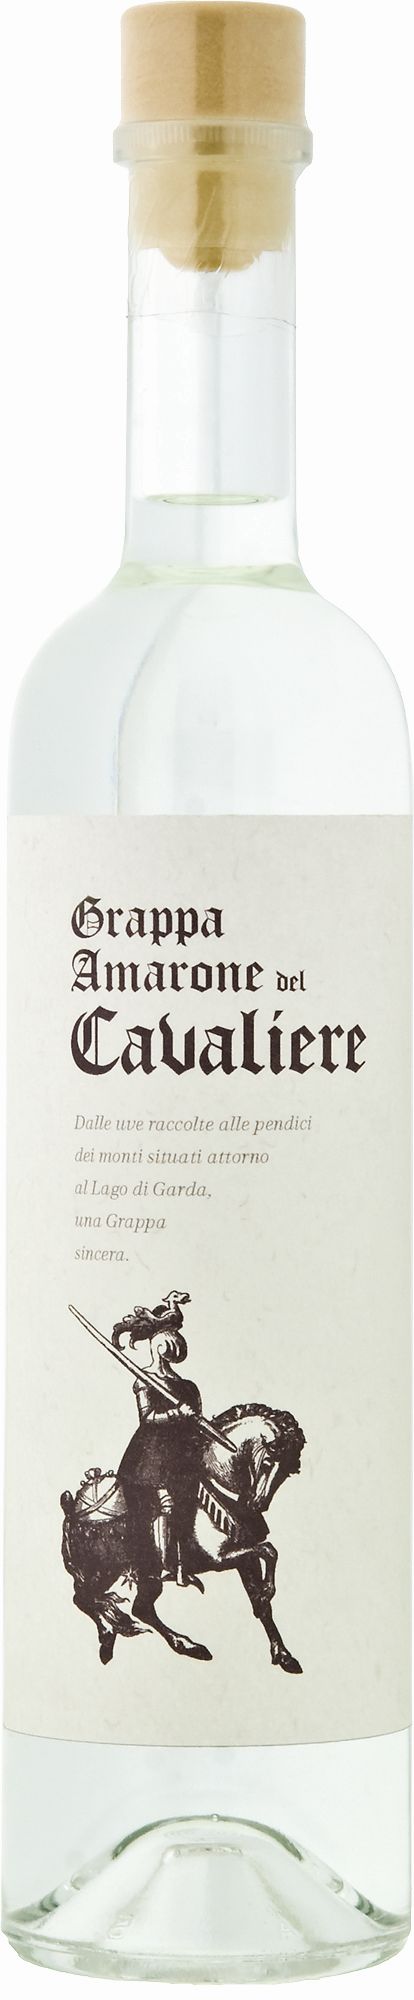 Marzadro Cavaliere Grappa Amarone 0,5Ltr